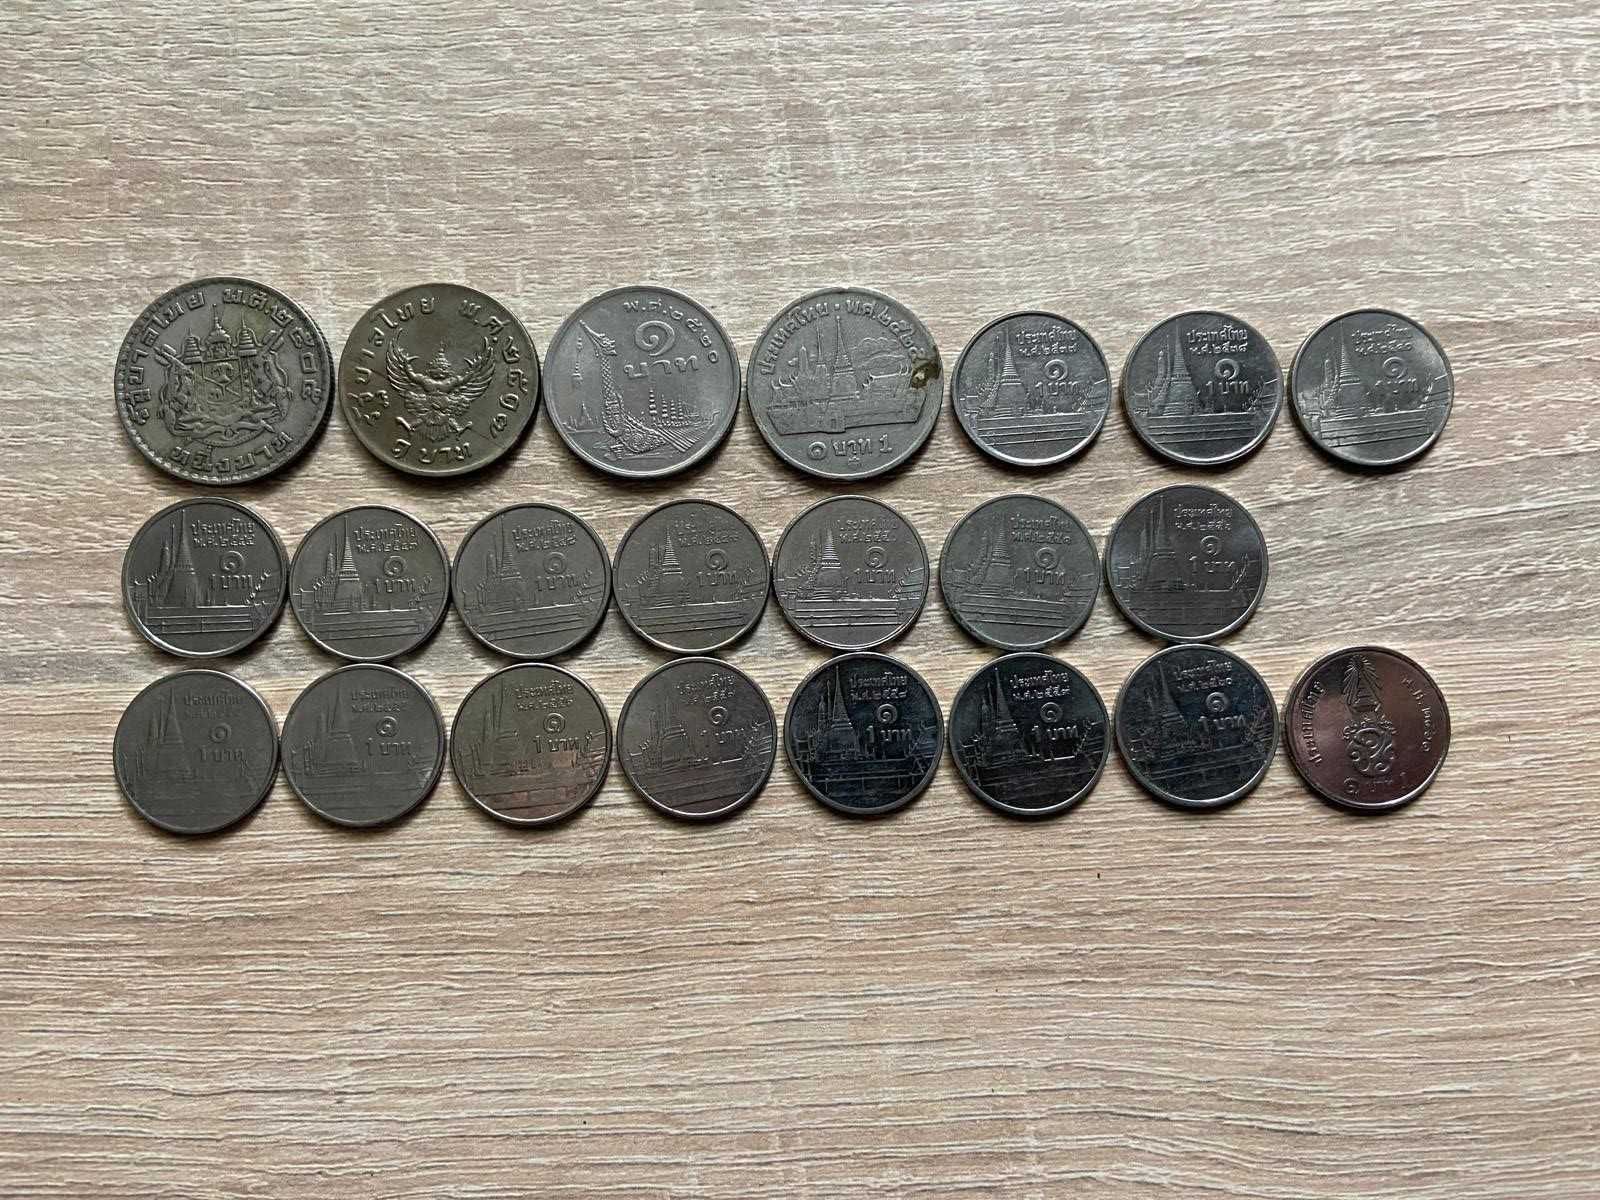 Lot monede Japonia, Thailanda